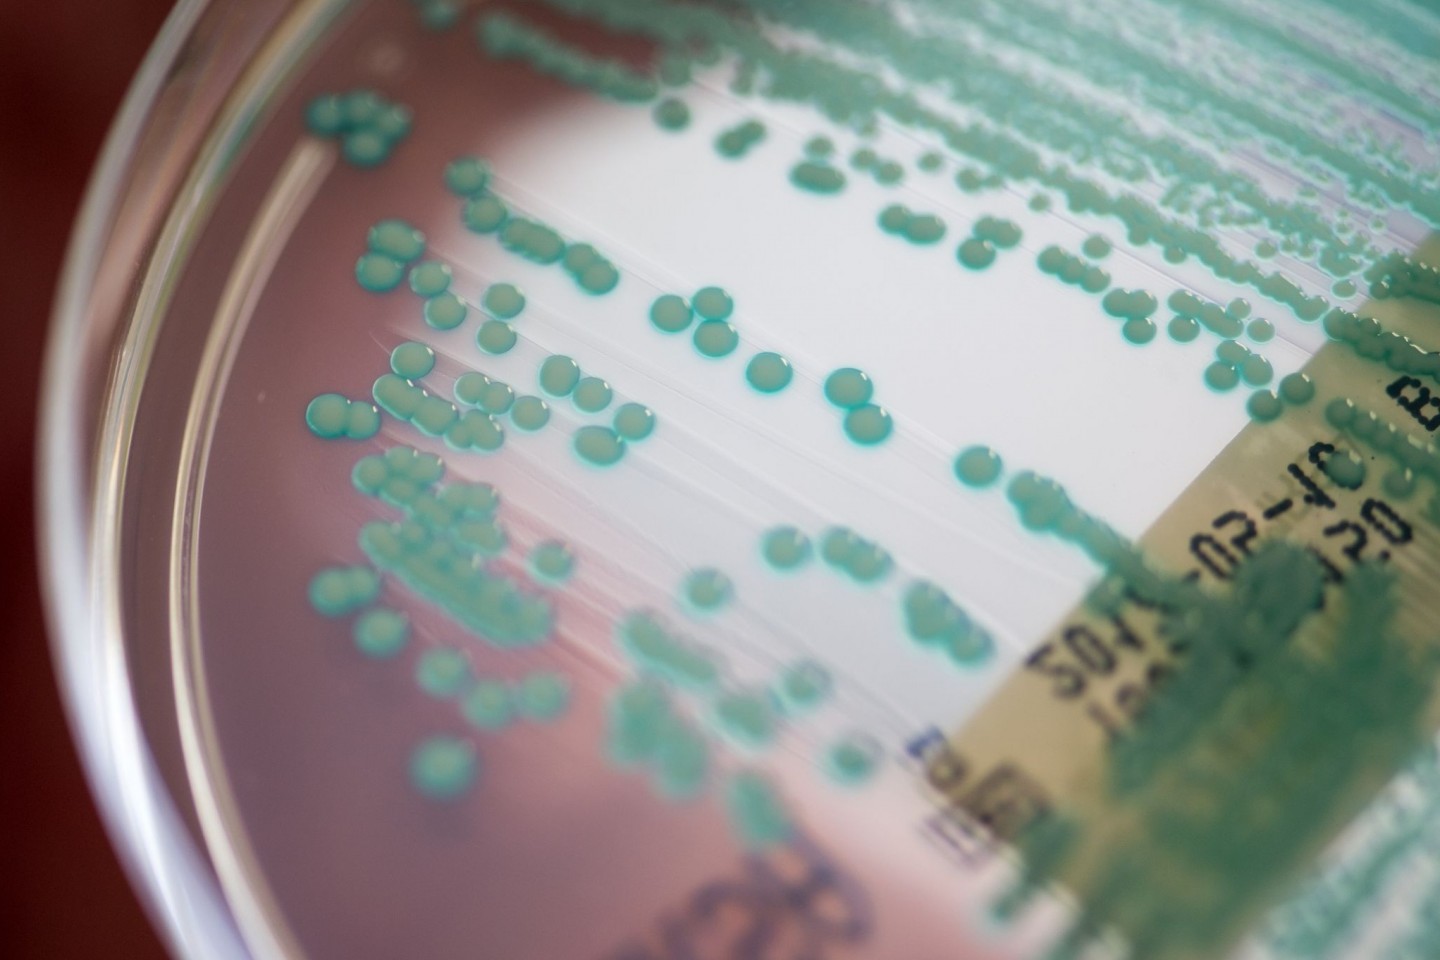 Eine Petrischale mit MRSA-Keimen (Methicillin-resistenten Staphylococcus aureus), aufgenommen im Universitätsklinikum Regensburg. (Archivbild)